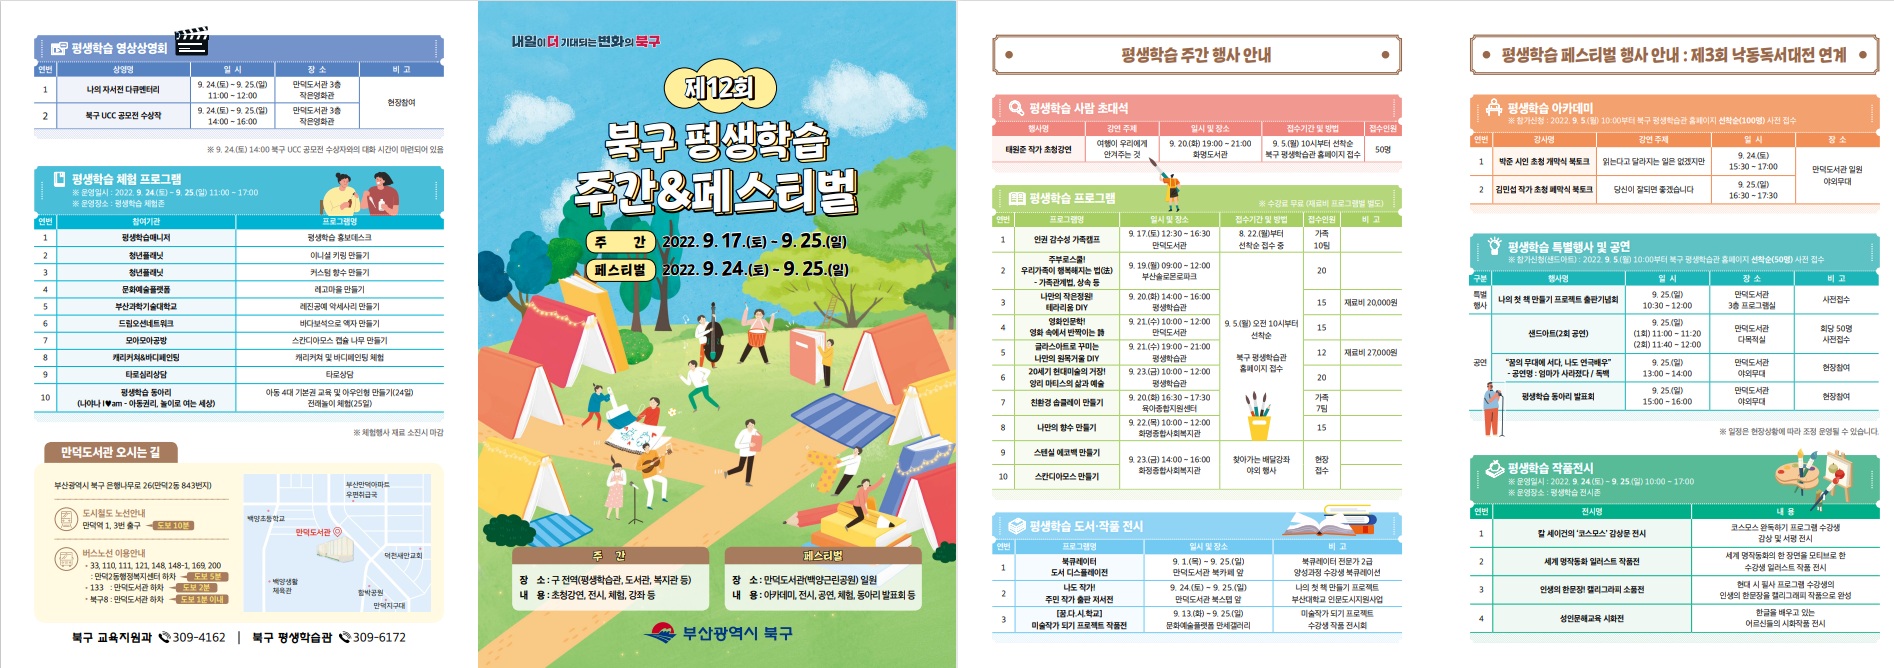 제12회 북구 평생학습주간 & 페스티벌 개최 안내